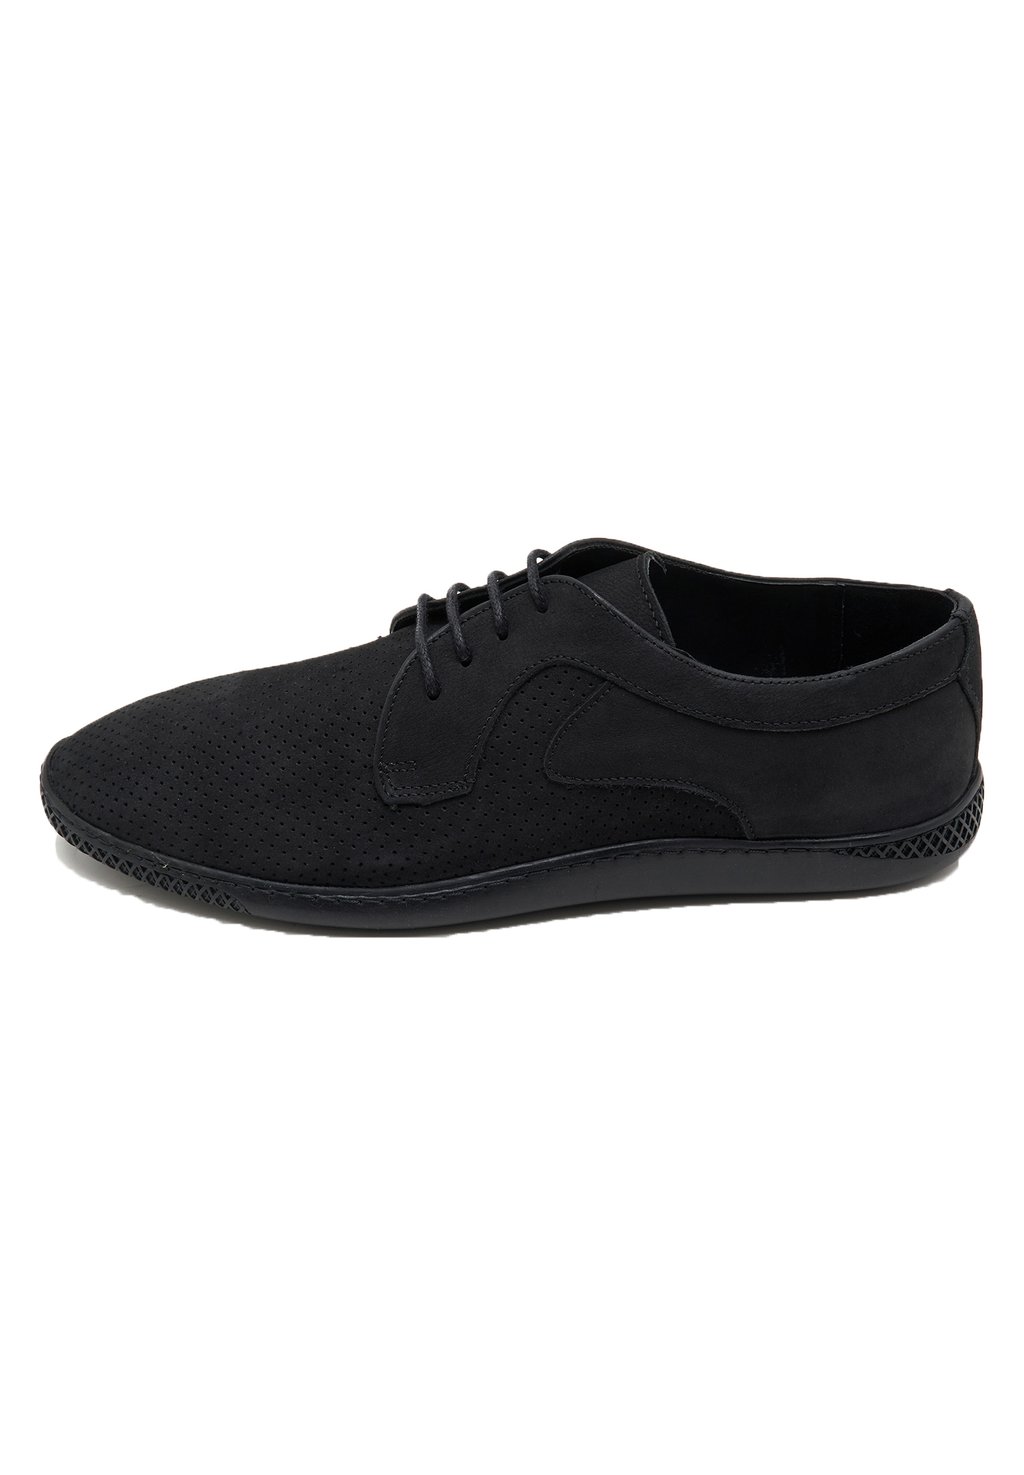 Спортивные туфли на шнуровке DESA, цвет black спортивные туфли на шнуровке desa цвет white